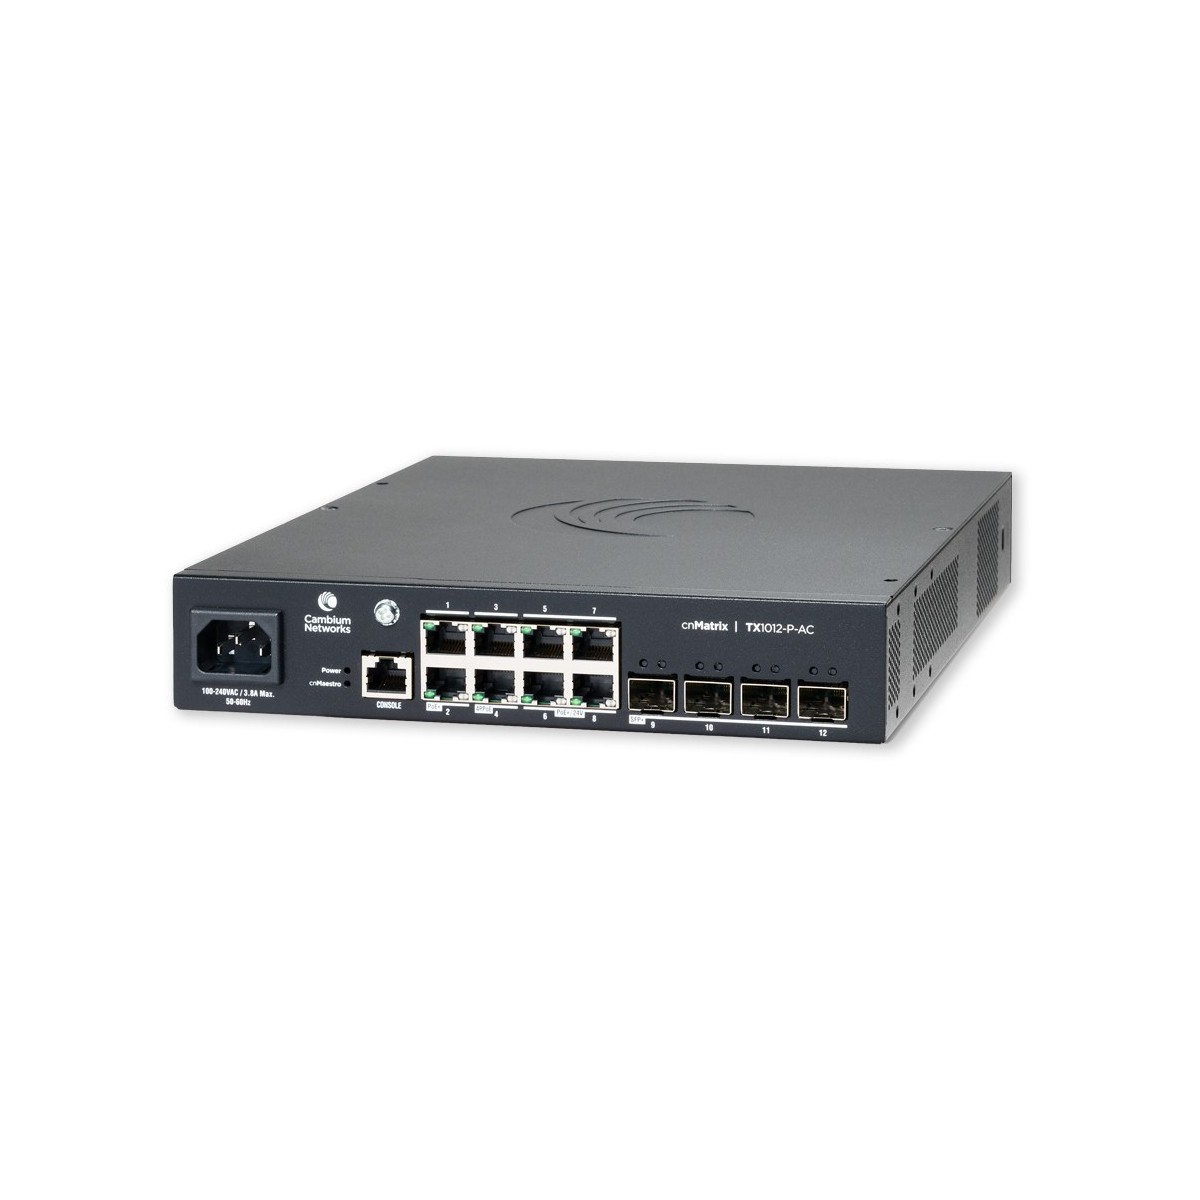 Cambium Networks cnMatrix TX 1012-P-AC - 200W POE Switch 8 x 1gbps  4 SFP+ - Switch - 1 Gbps